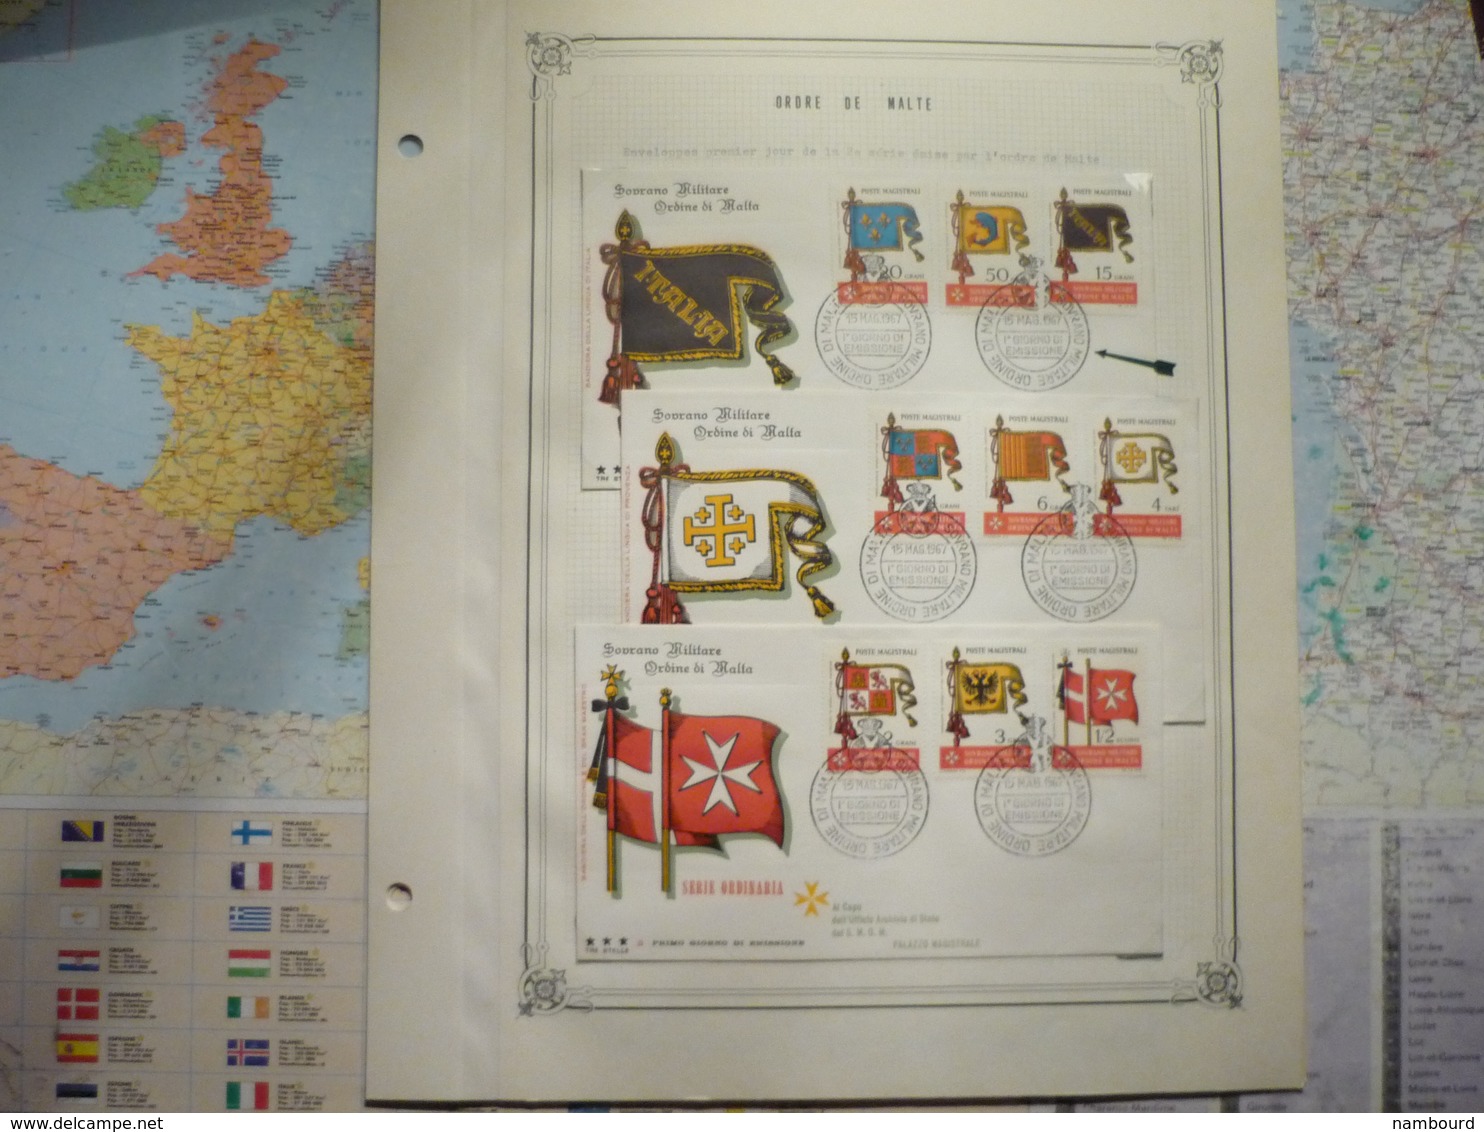 Collection de l'Ordre de Malte 1967-1968 montée sur feuilles d'album